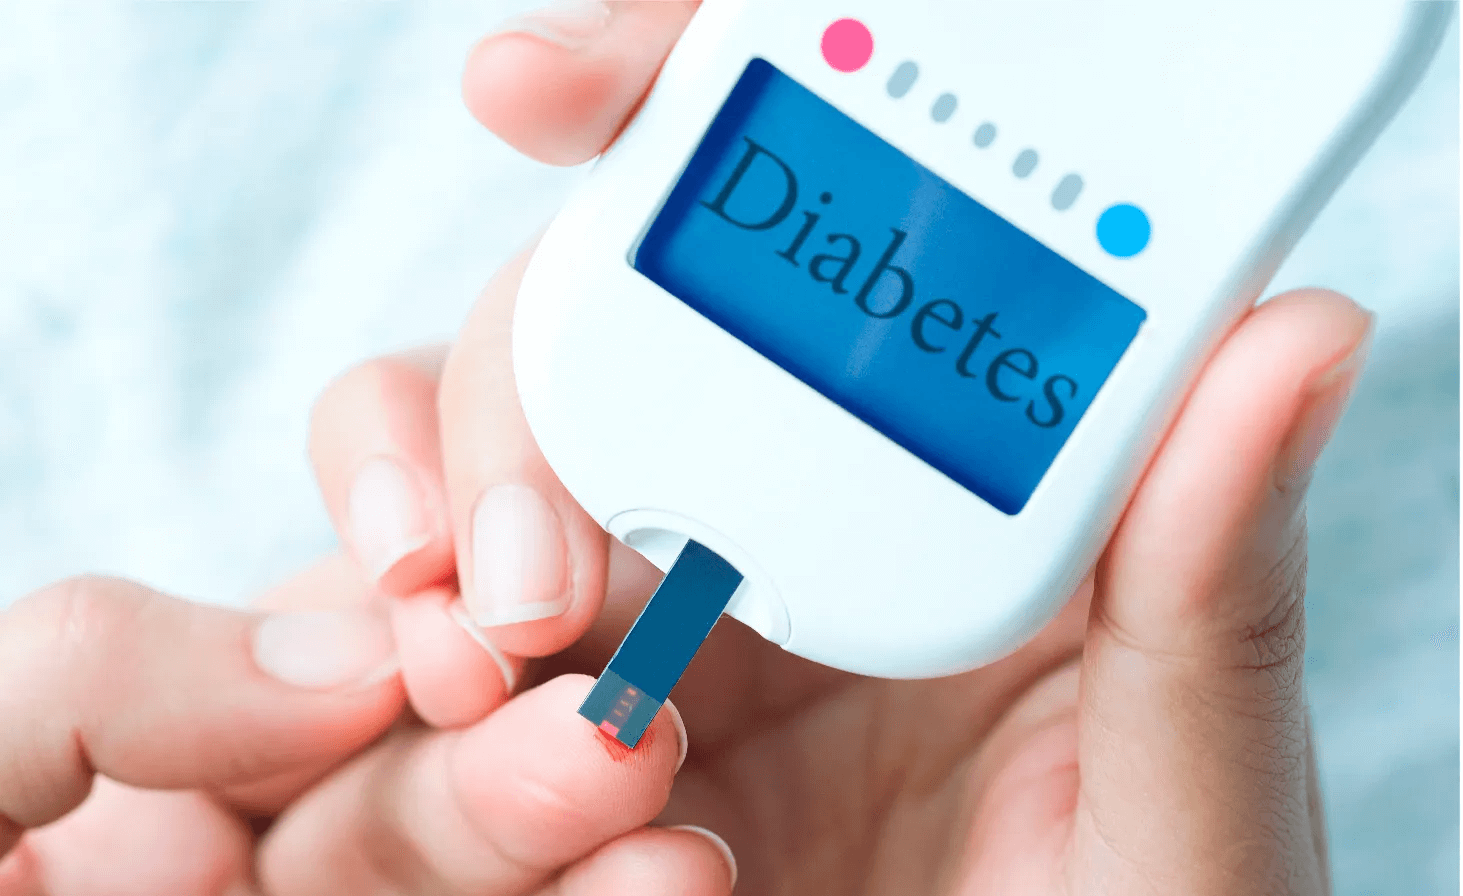 Bukan Gula Ternyata Ini Penyebab Utama Diabetes, Jangan Sampai Salah Kaprah